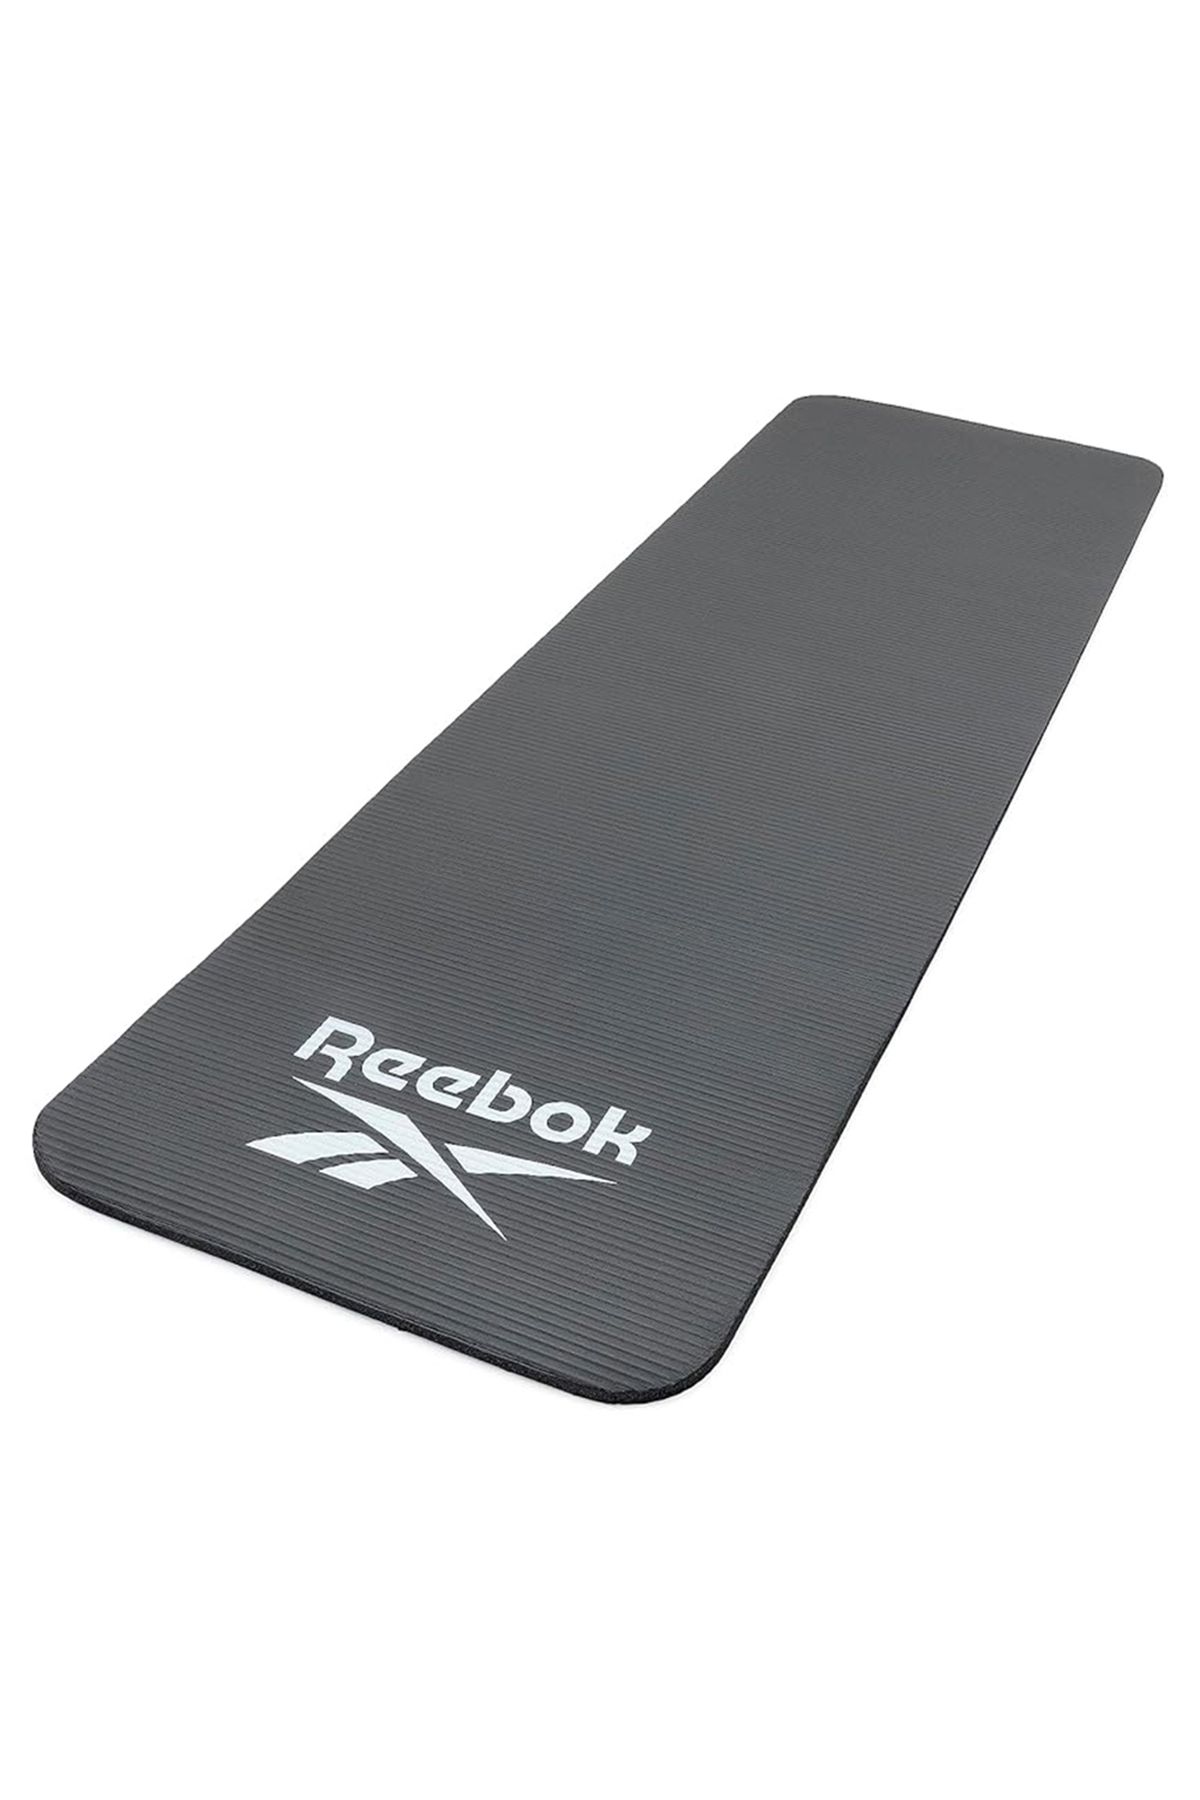 Reebok RAMT-11015BK Fitness Mat